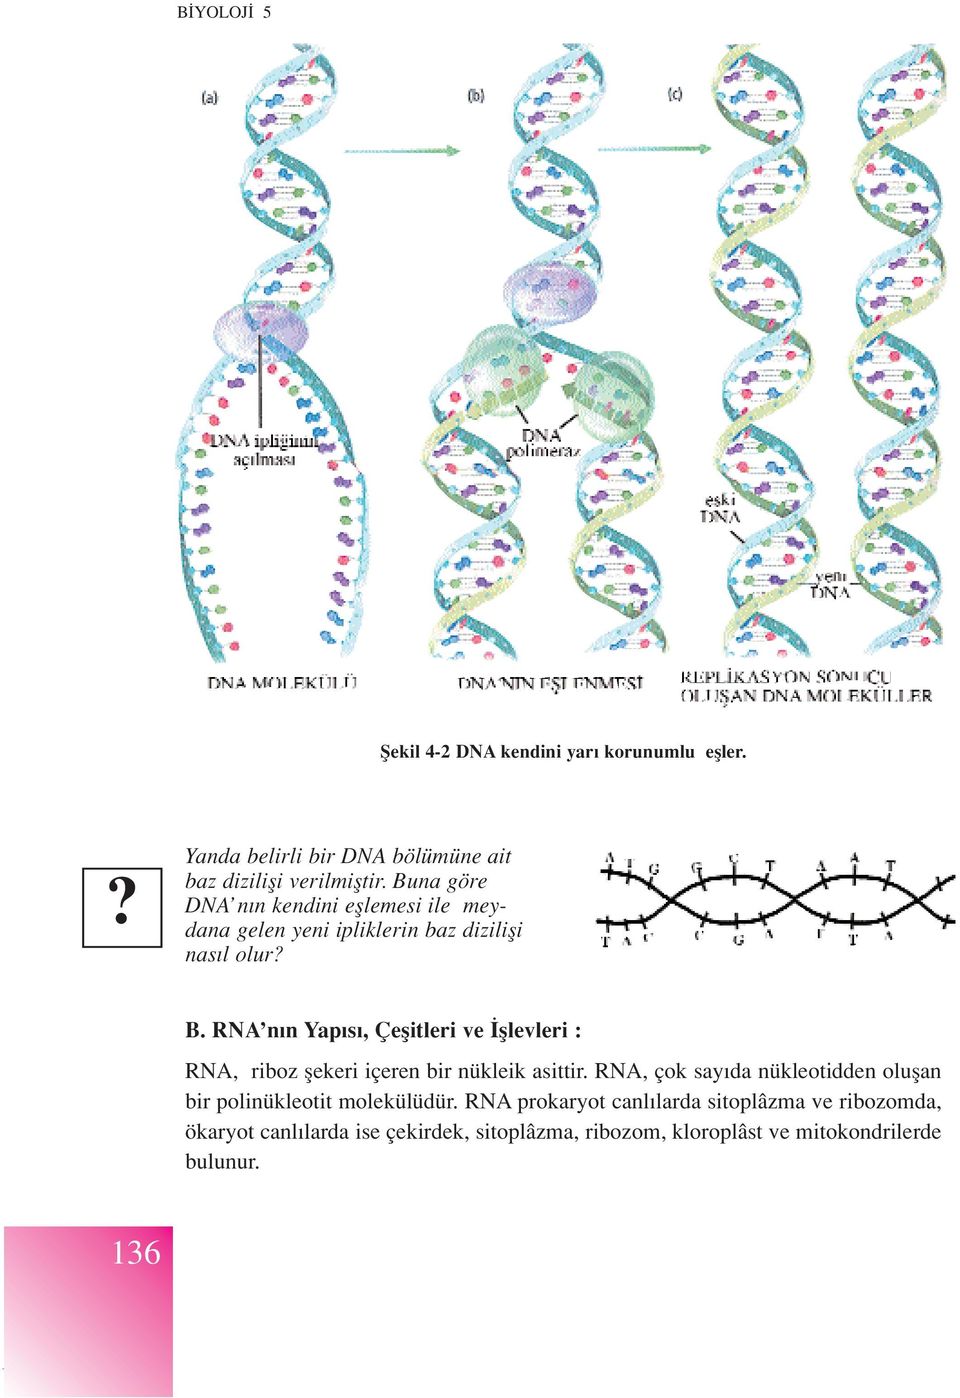 RNA n n Yap s, Çeflitleri ve fllevleri : RNA, riboz flekeri içeren bir nükleik asittir.